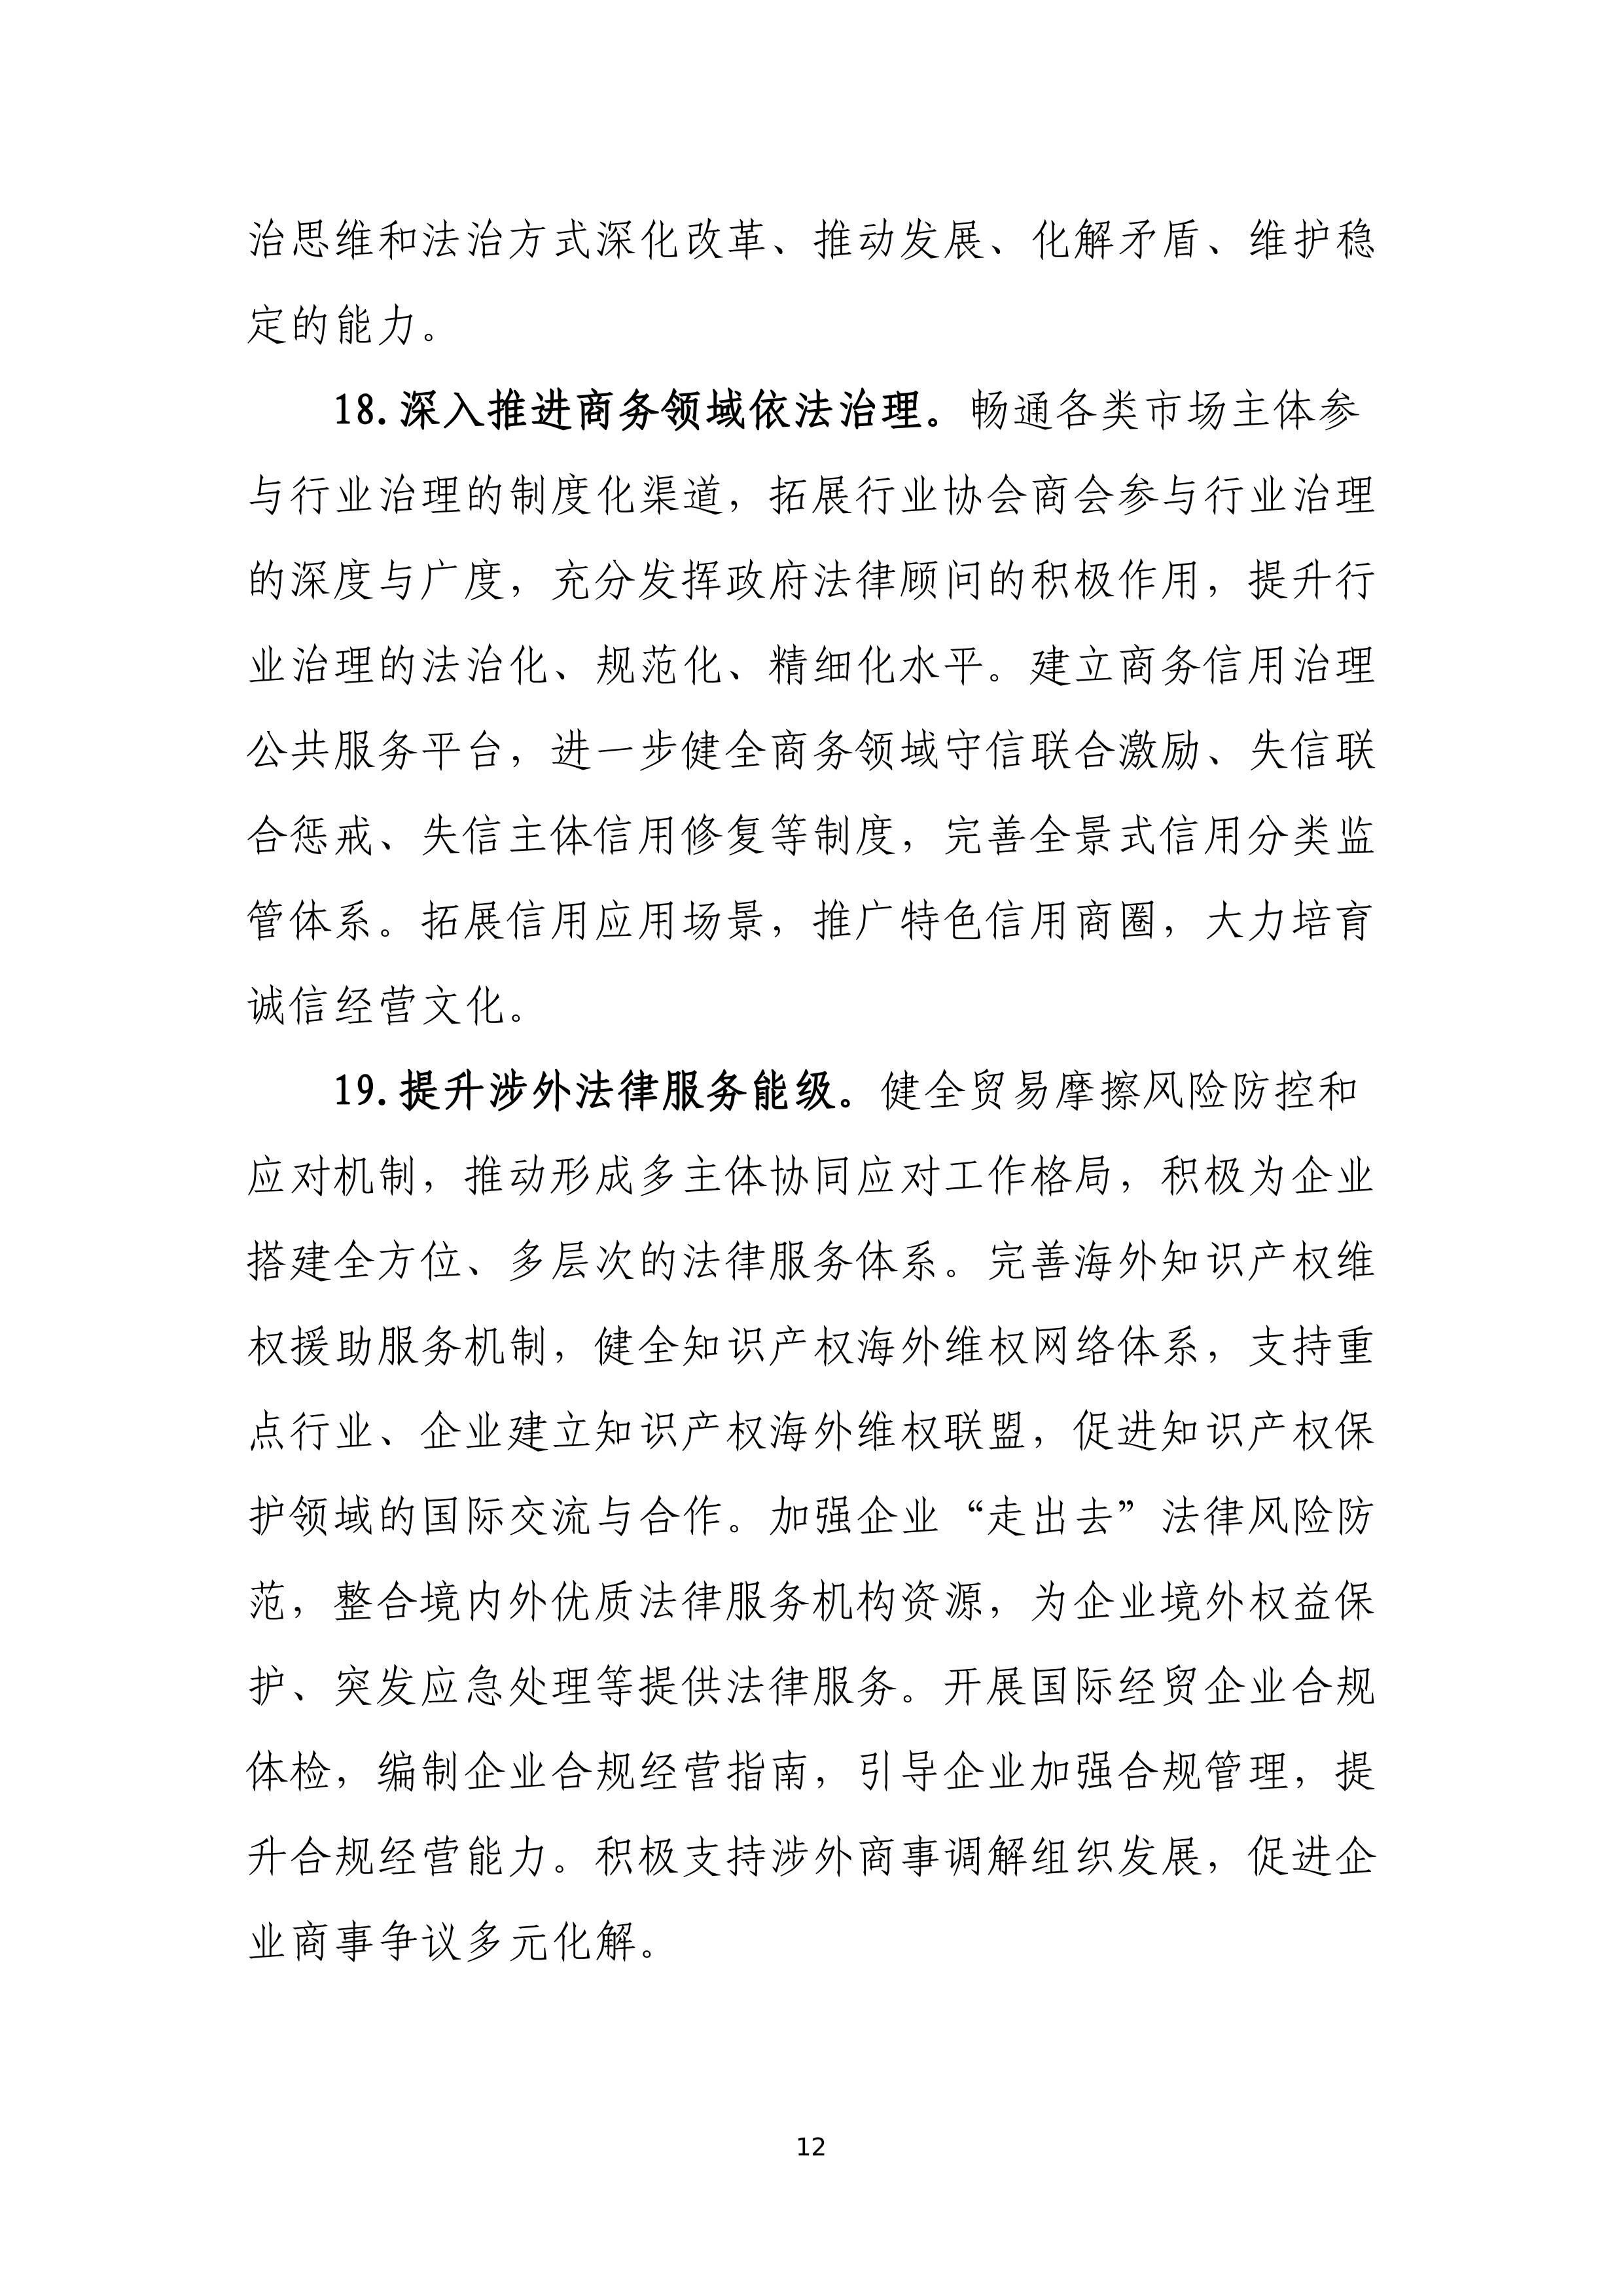 “十四五”时期上海商务法治建设规划_12.jpg